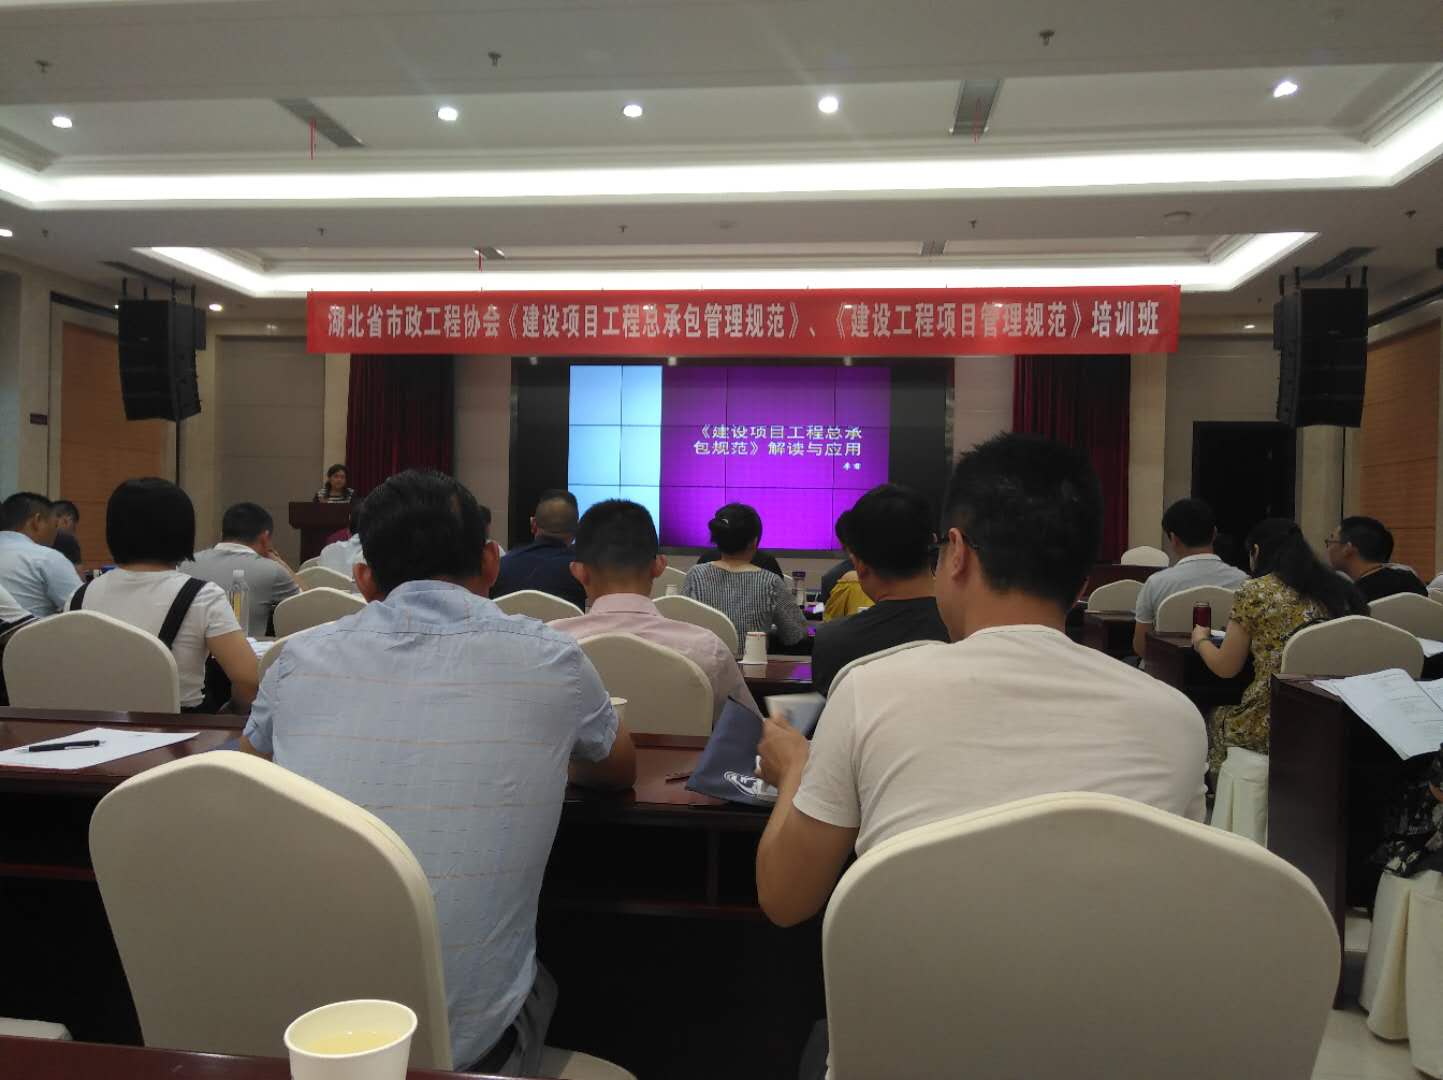 公司派员参加中国市政工程协会组织的培训学习